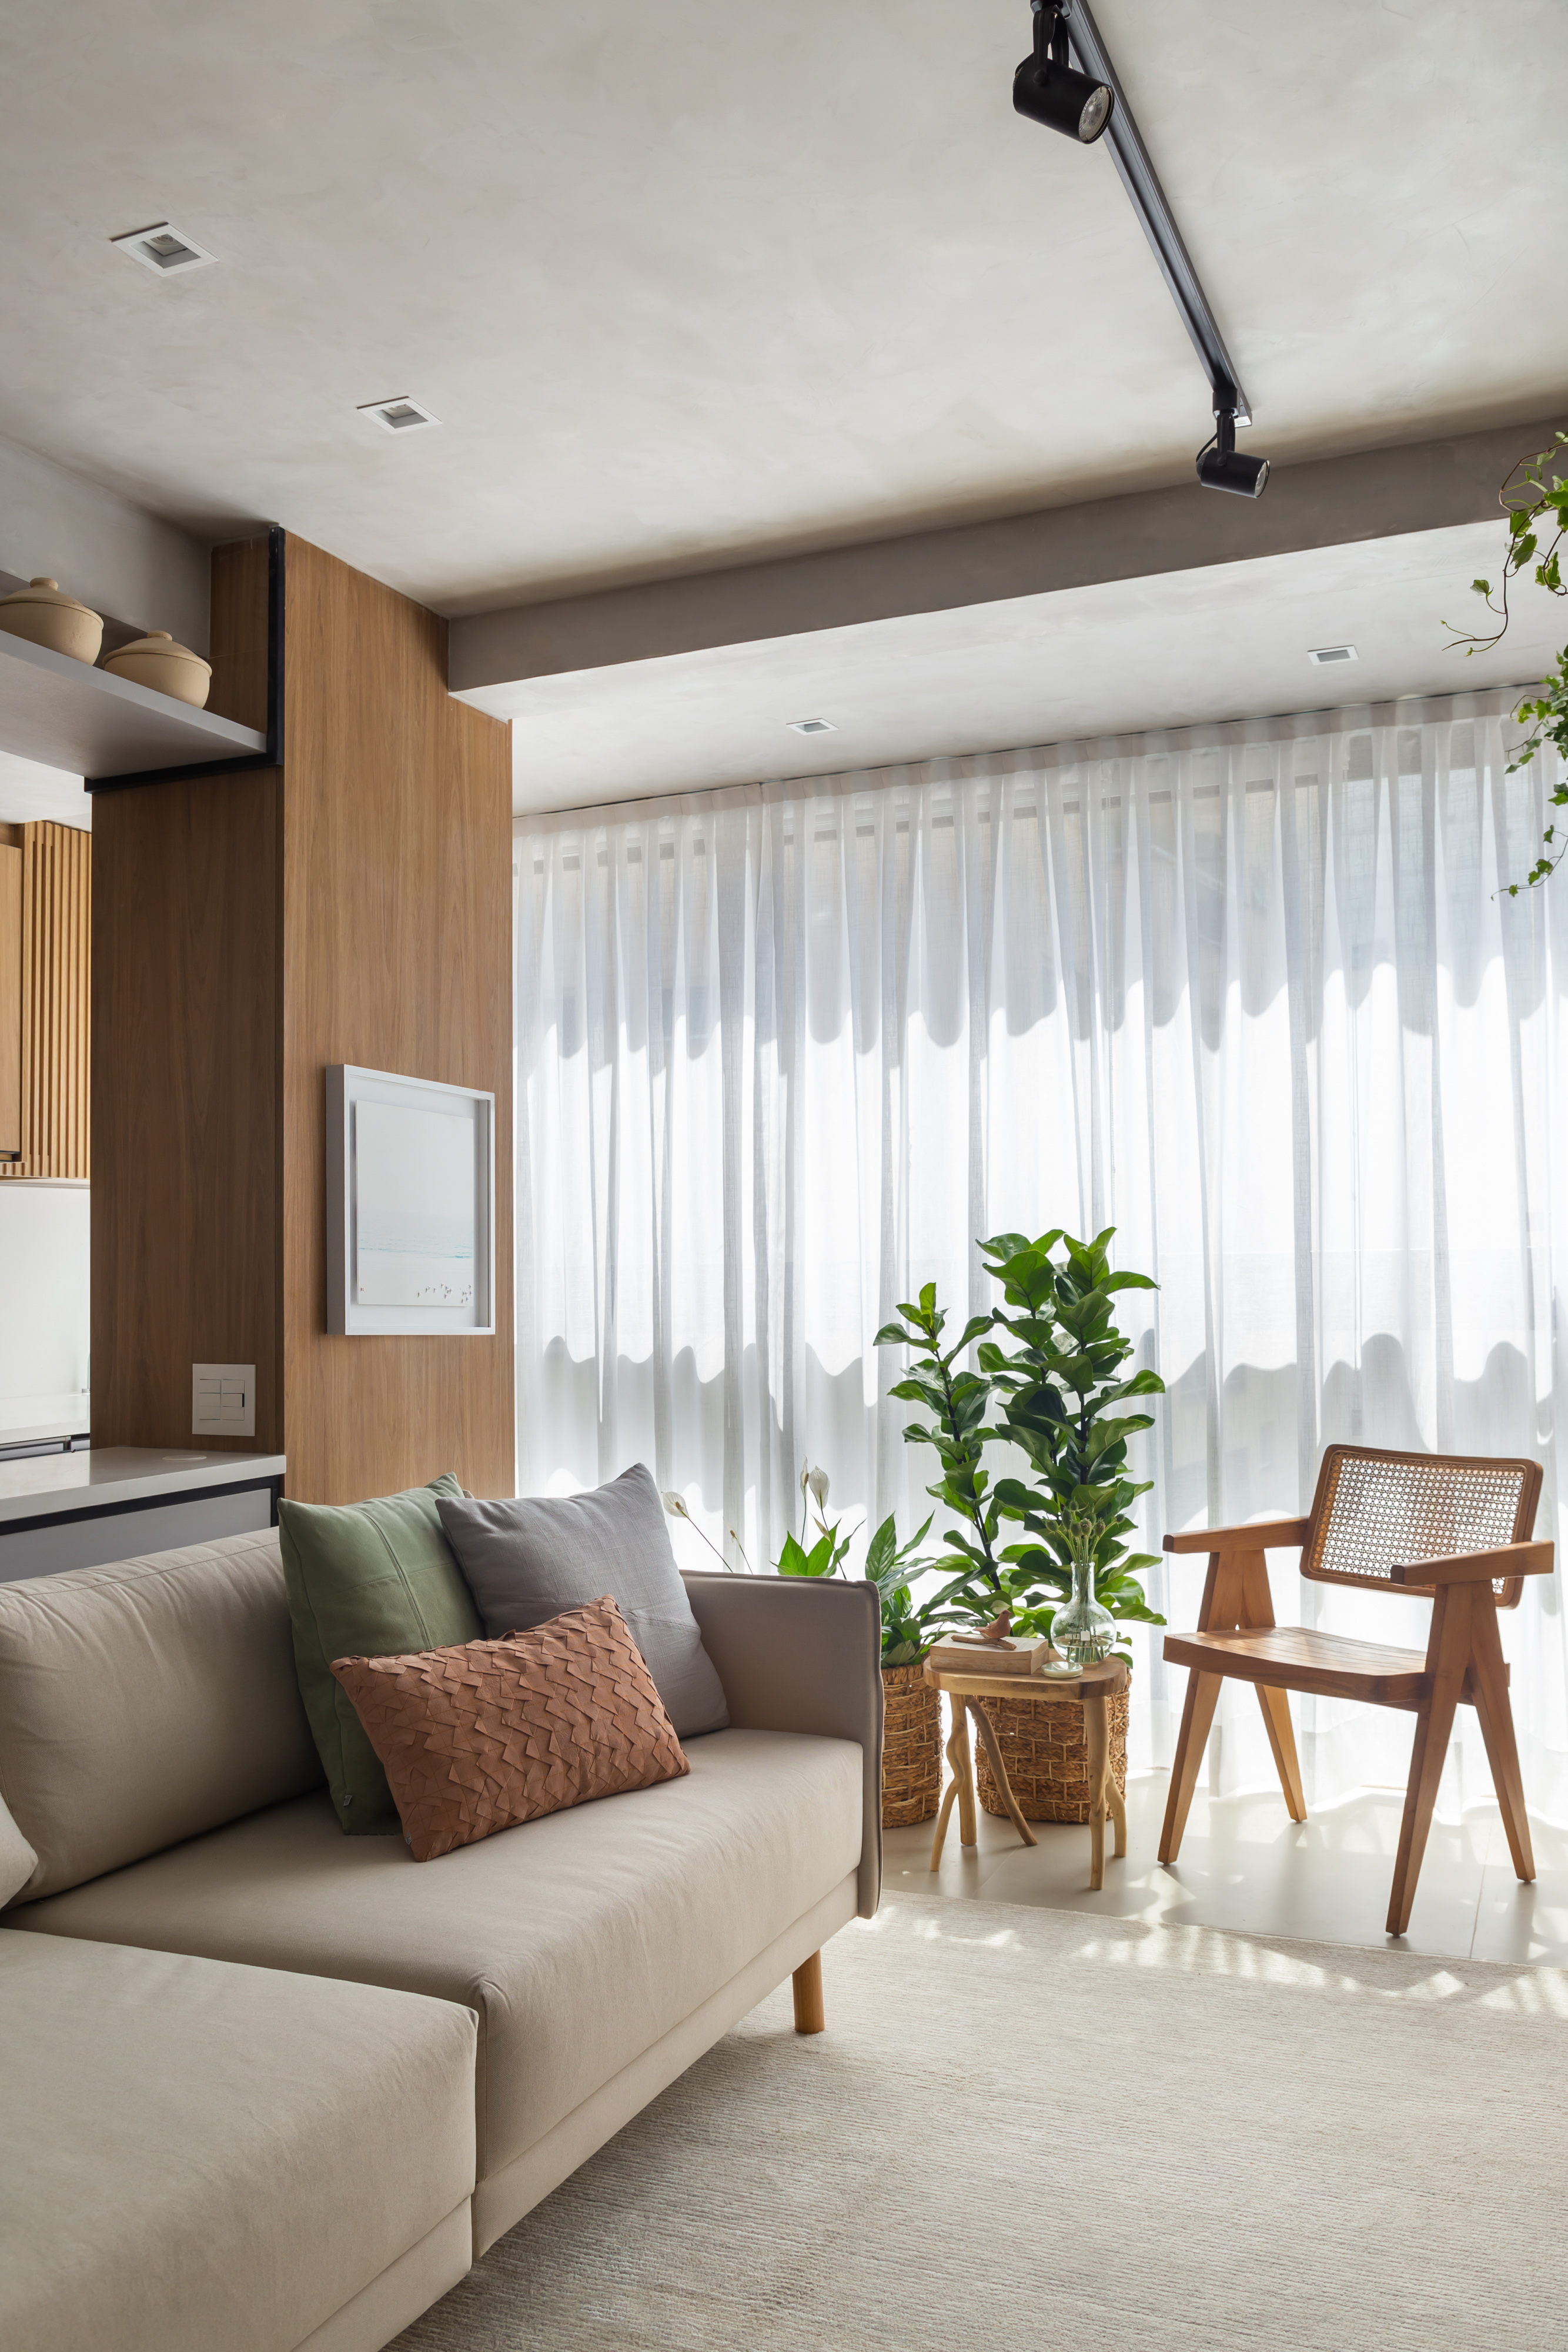 Sala de estar com sofá claro, tapete, cadeira, plantas e cortina branca.